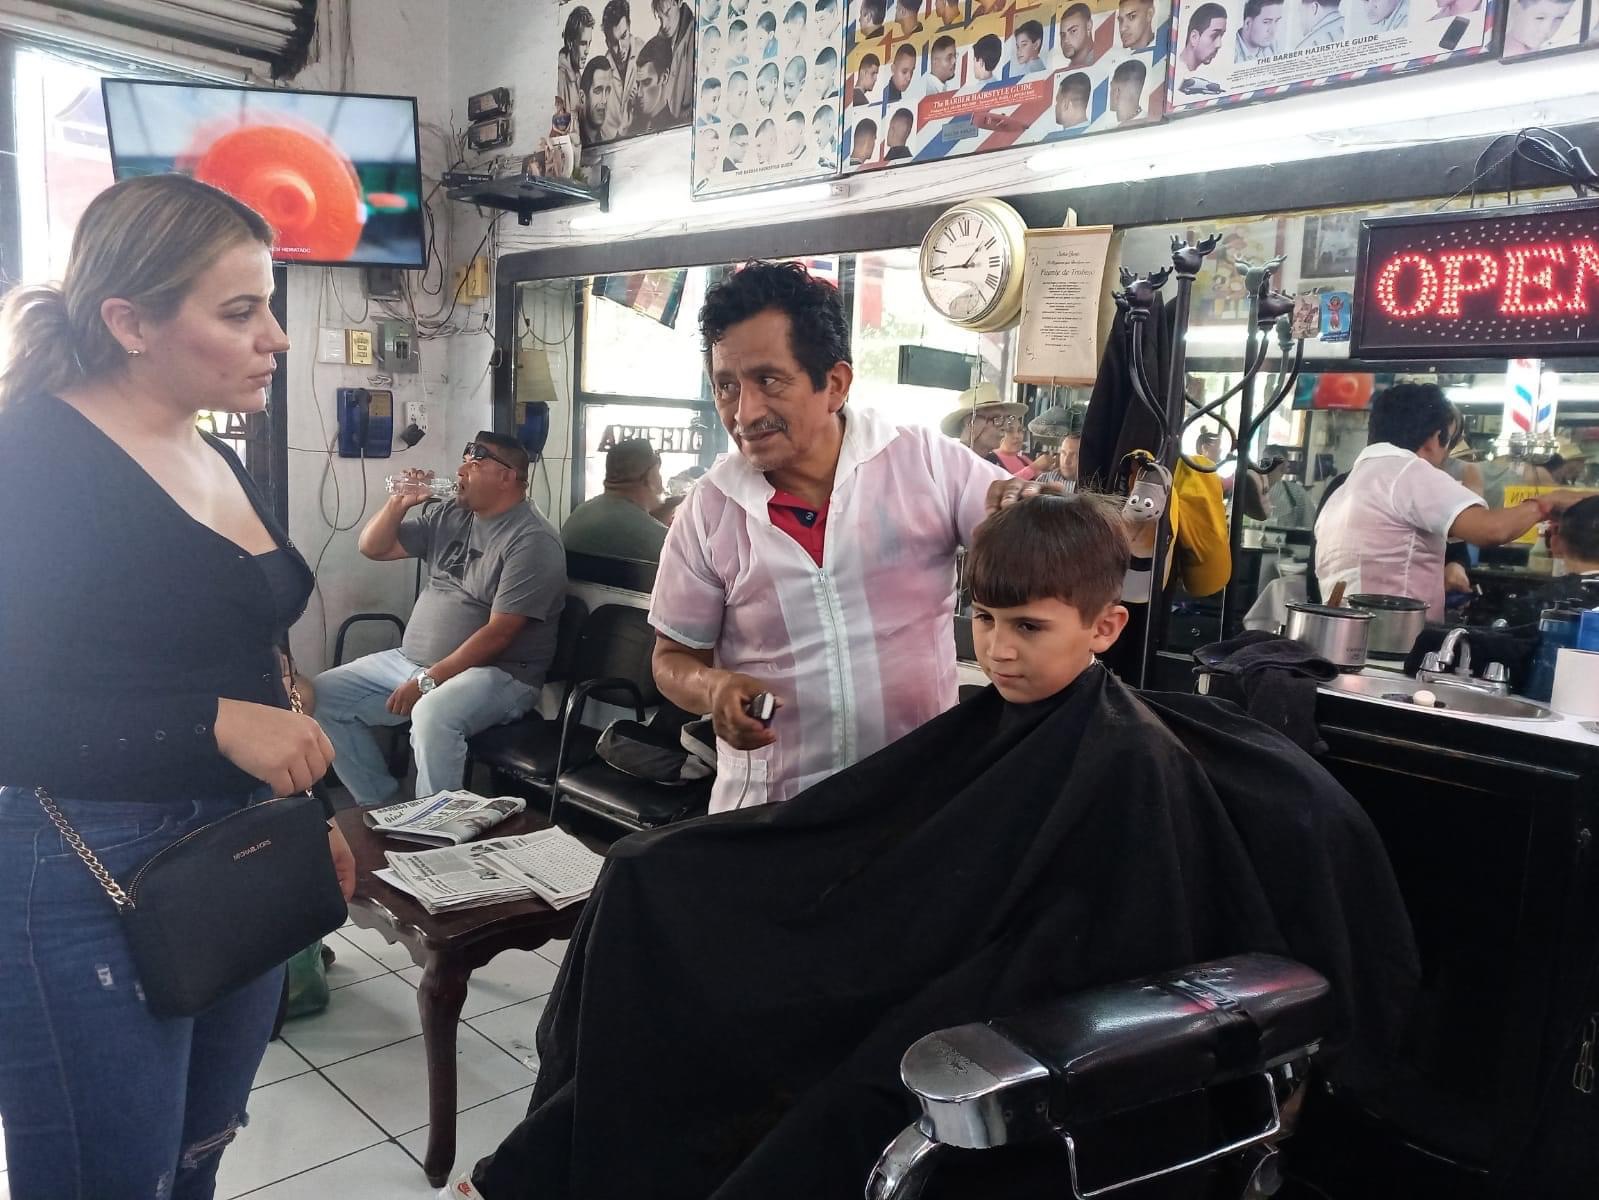 Labor de peluquero va más allá de contribuir a mejorar la apariencia física de las personas